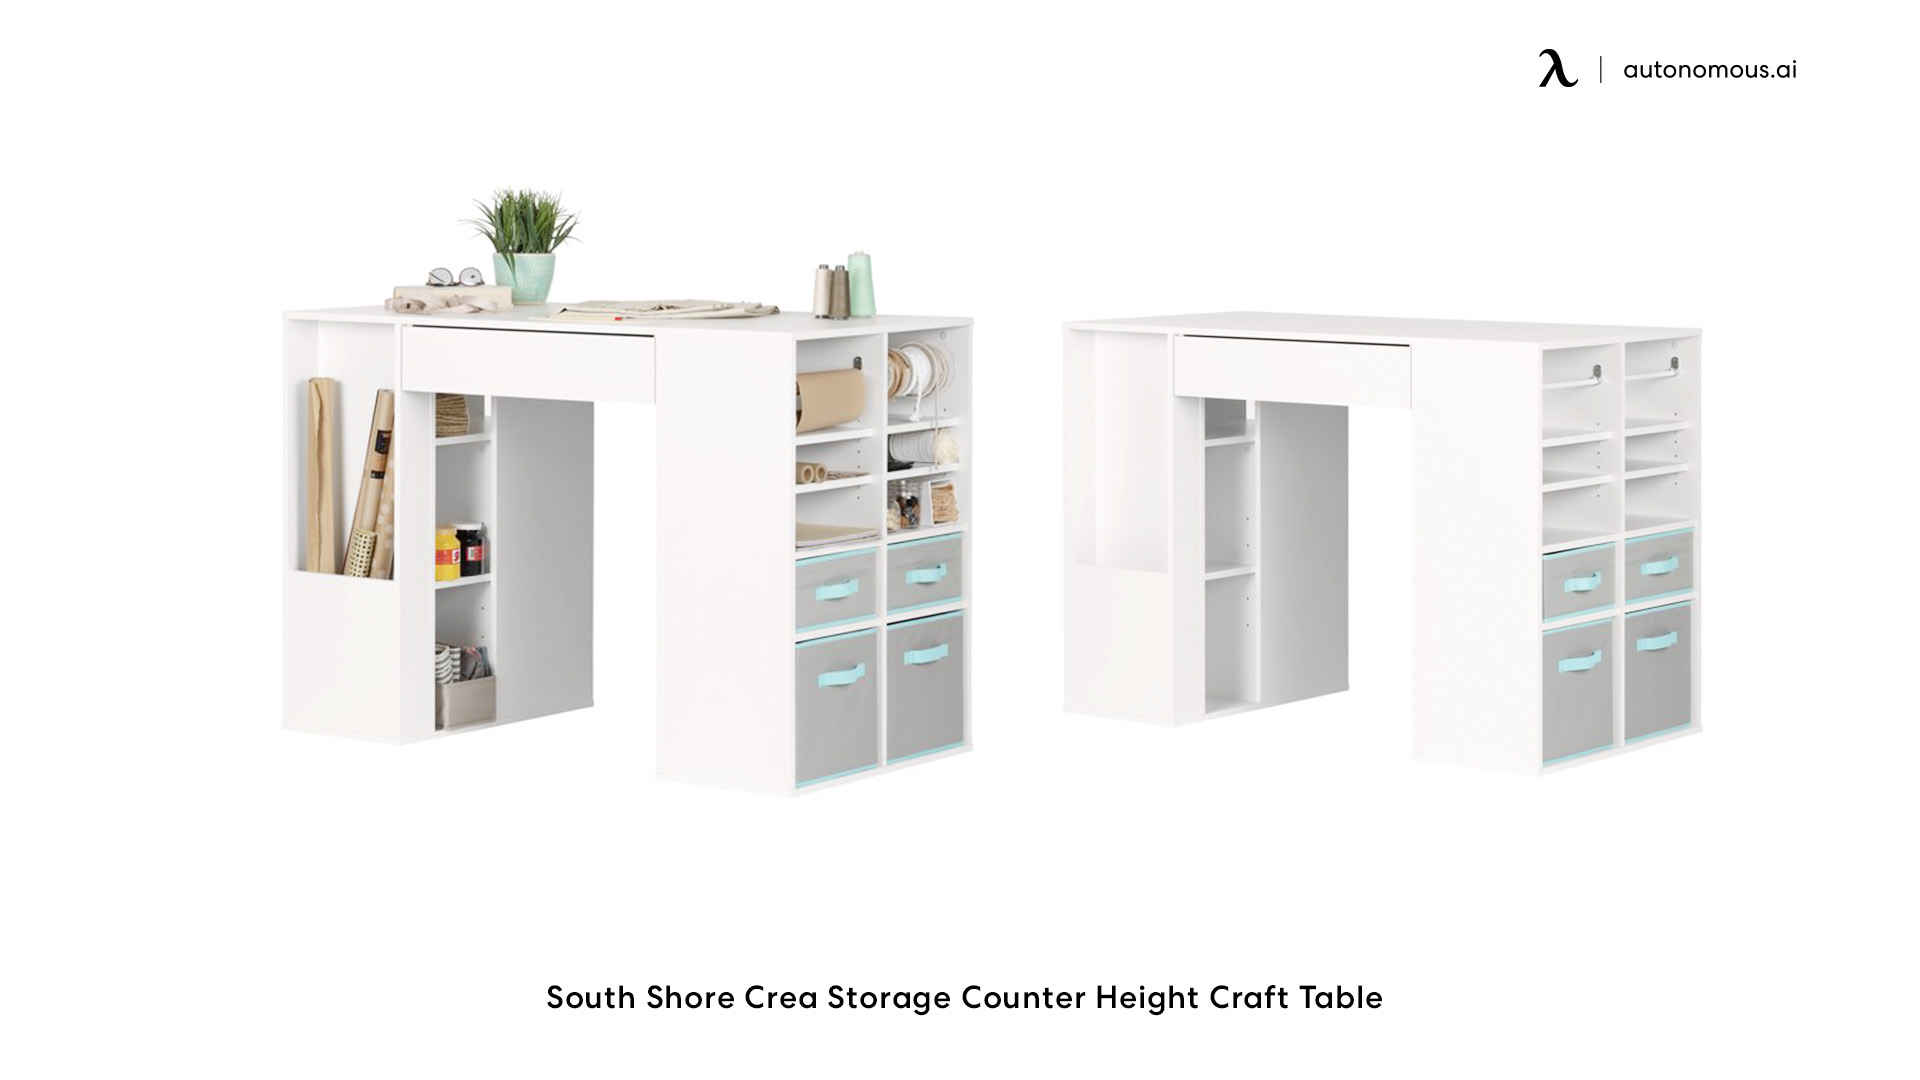 South Shore Crea Storage Counter modern white desk